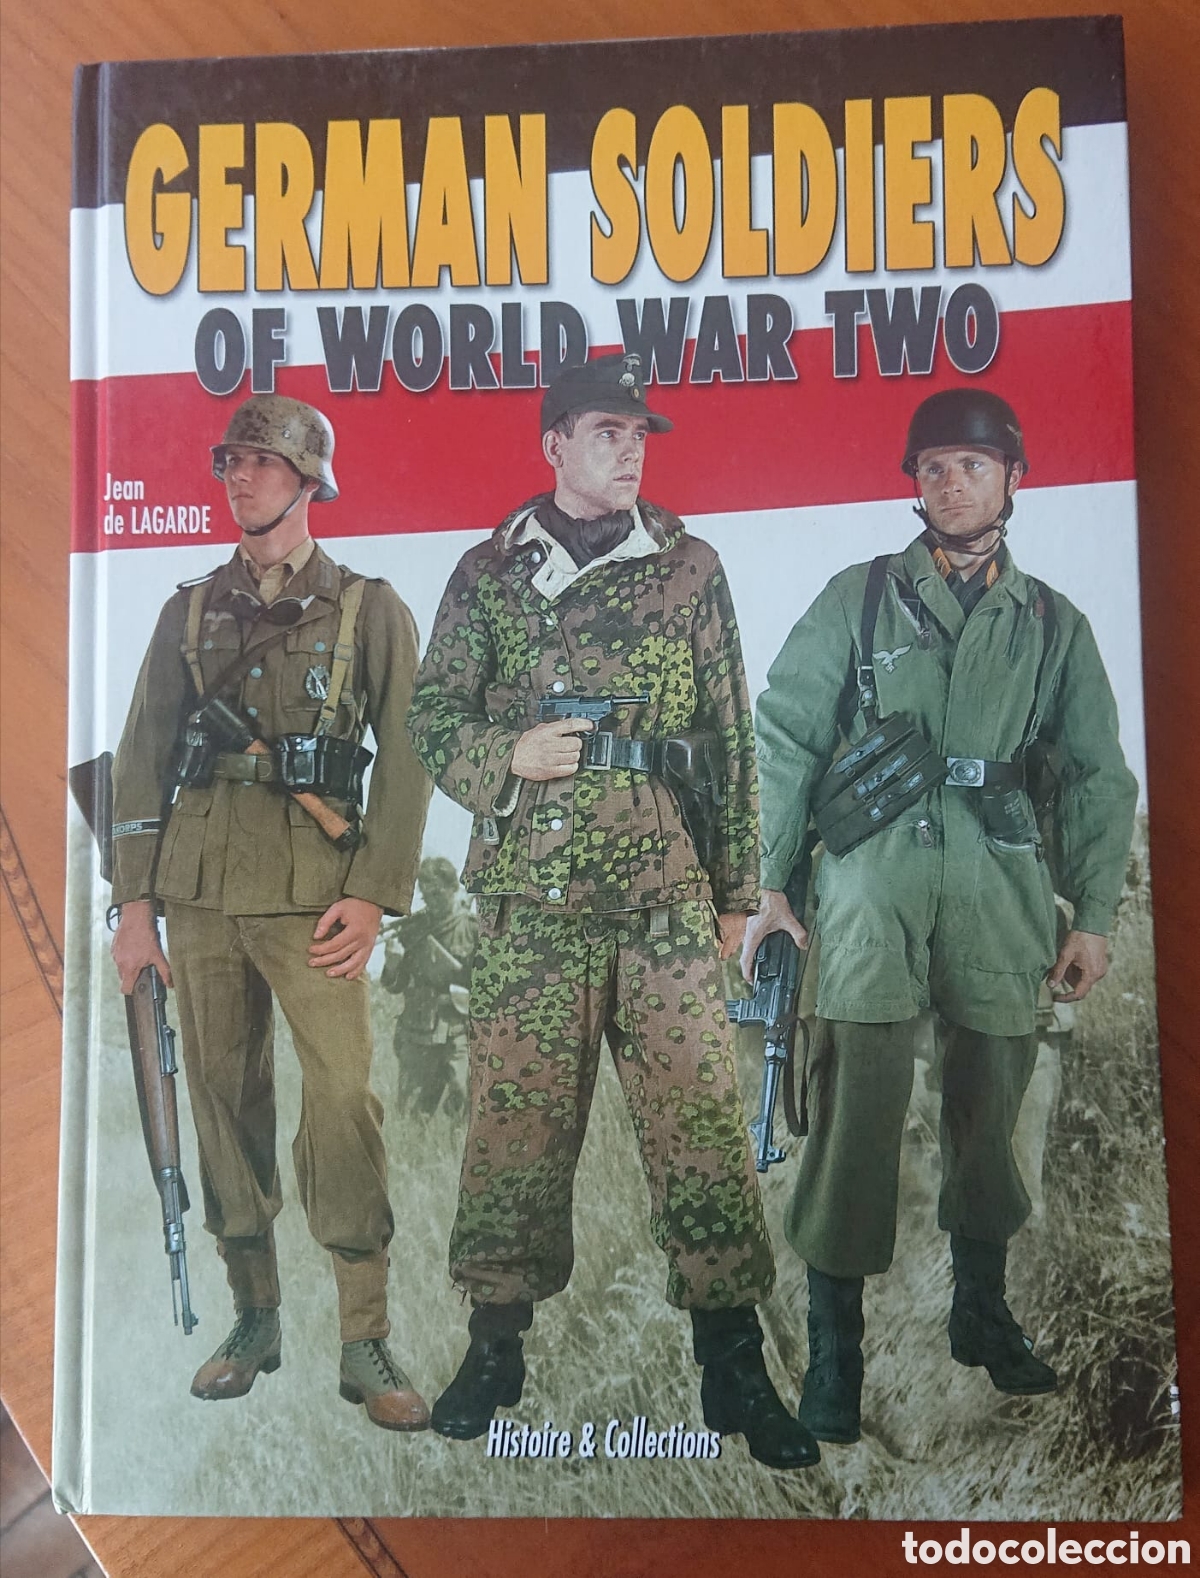 libro soldados alemanes germán soldiers uniform - Compra venta en  todocoleccion